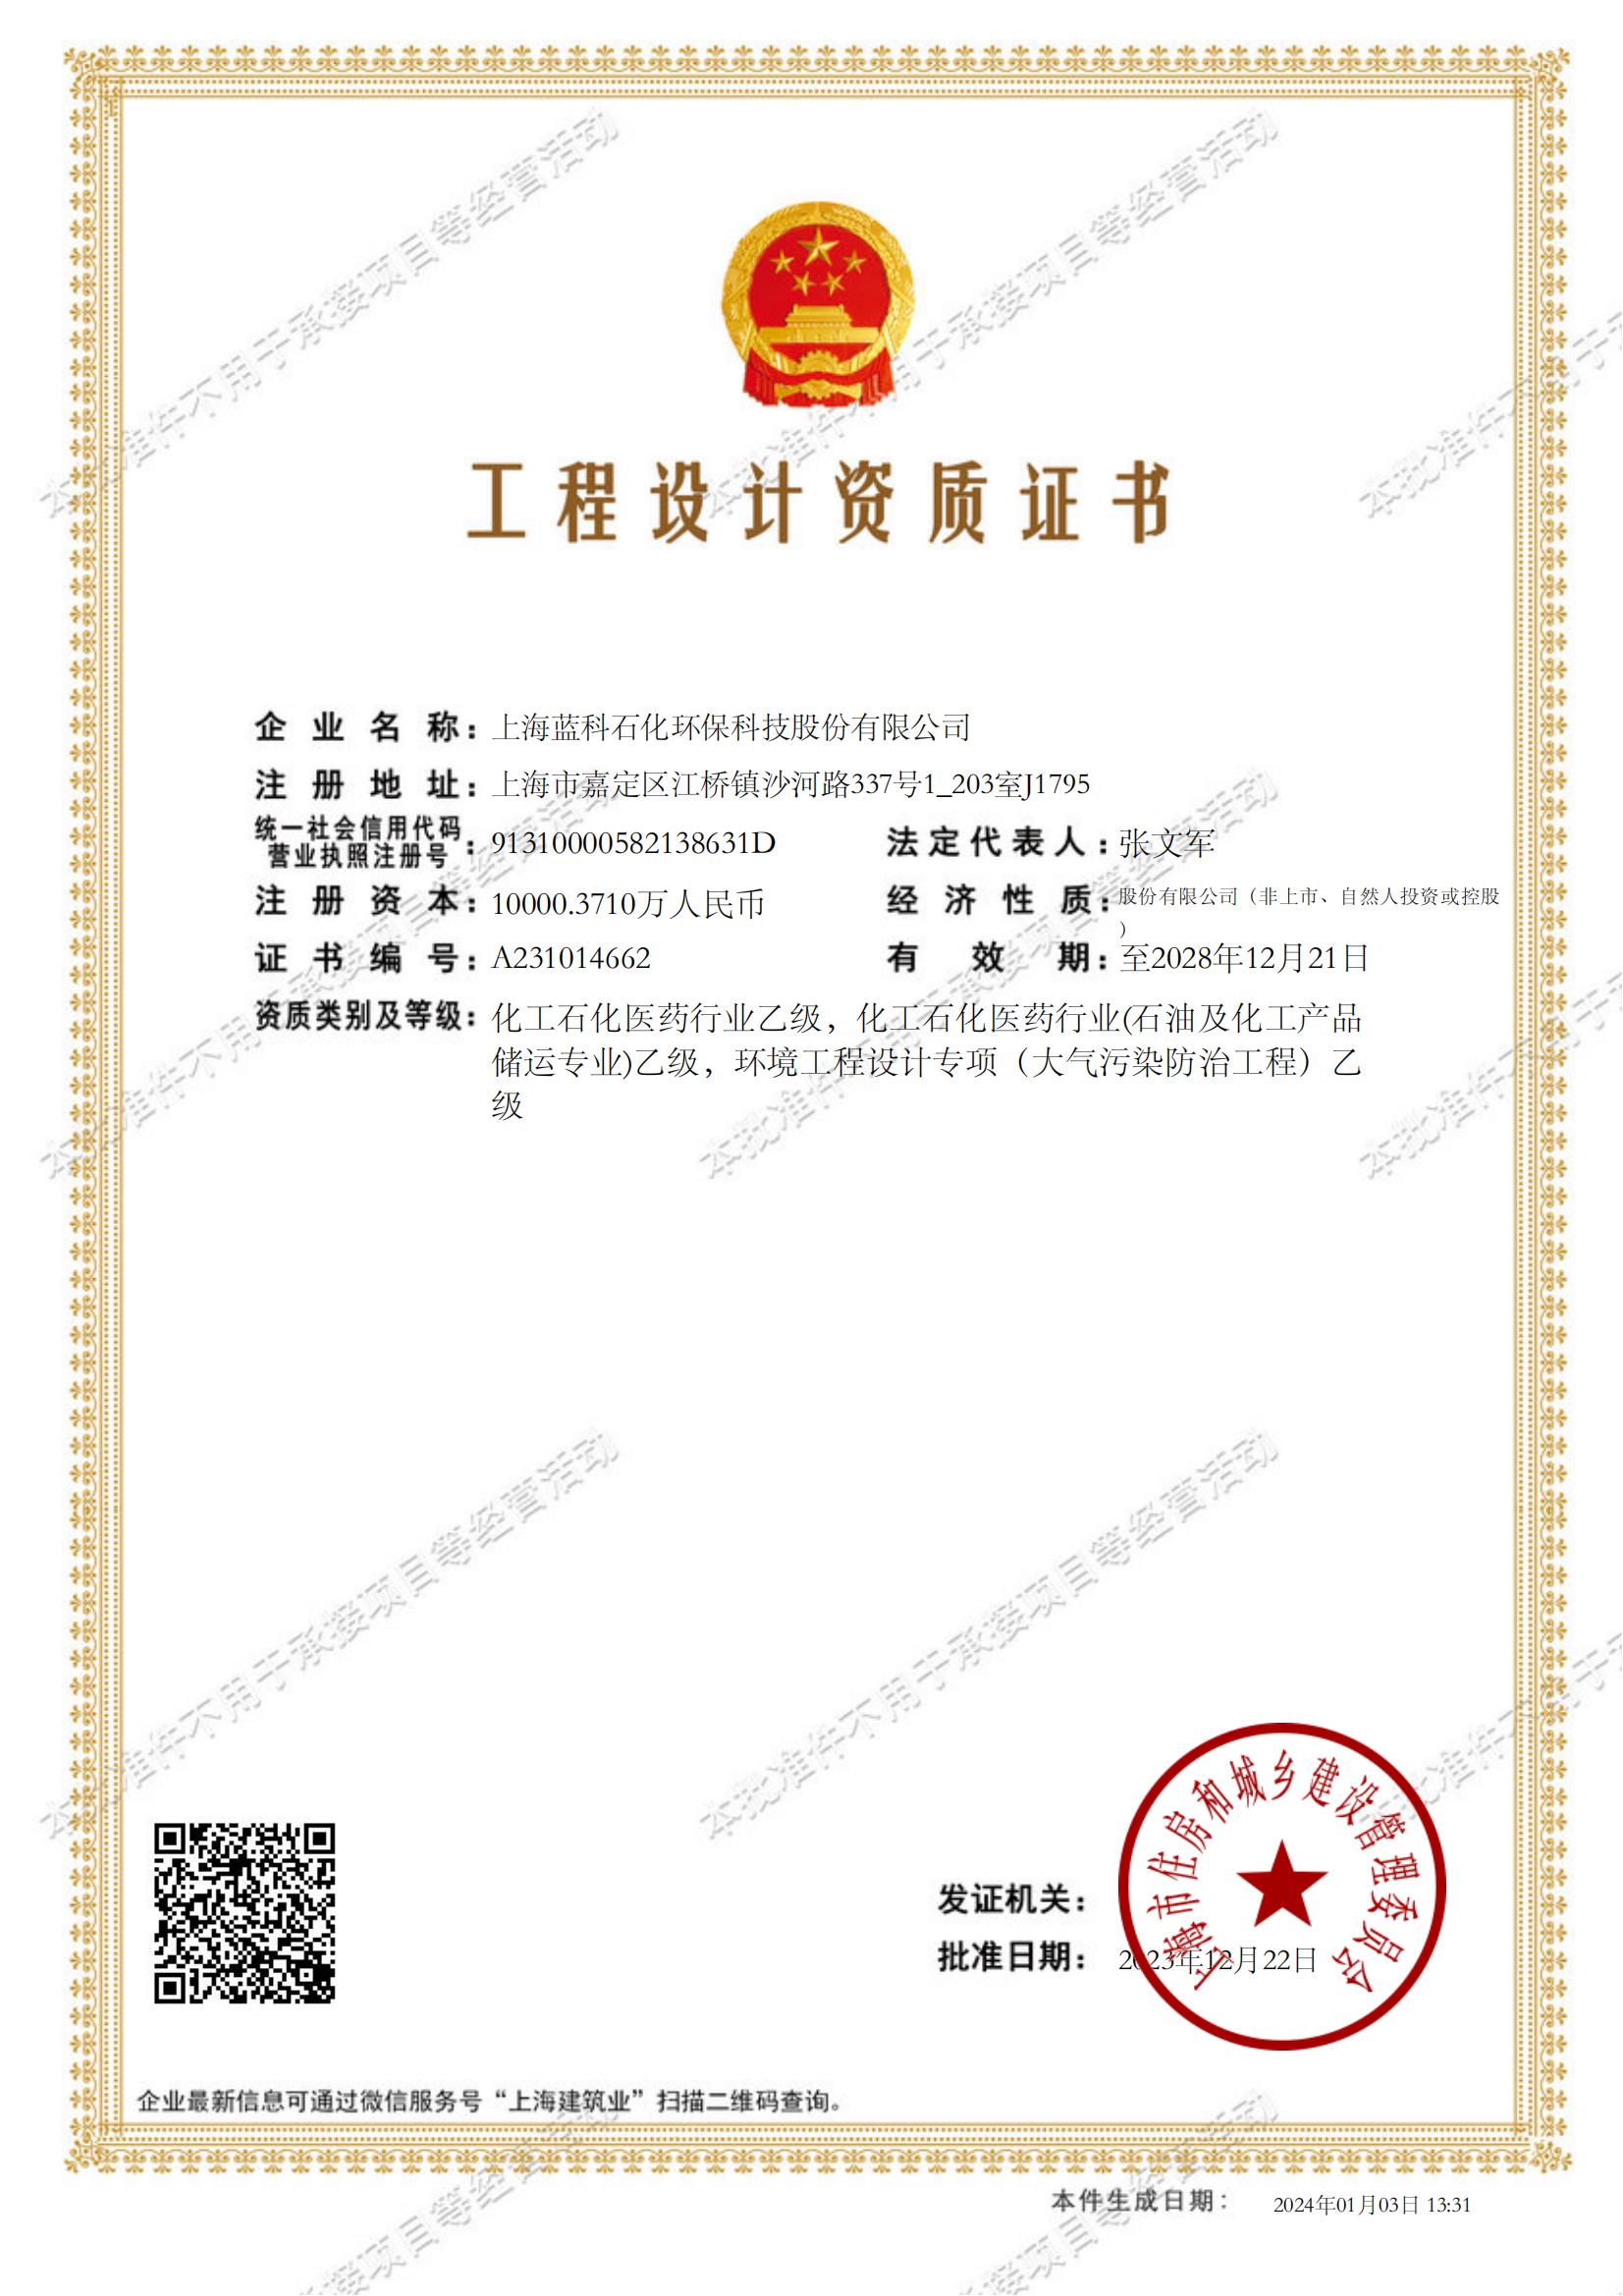 2023.12.22~2028.12.21上海蓝科石化环保科技股份有限公司工程设计资质证书1-.jpg